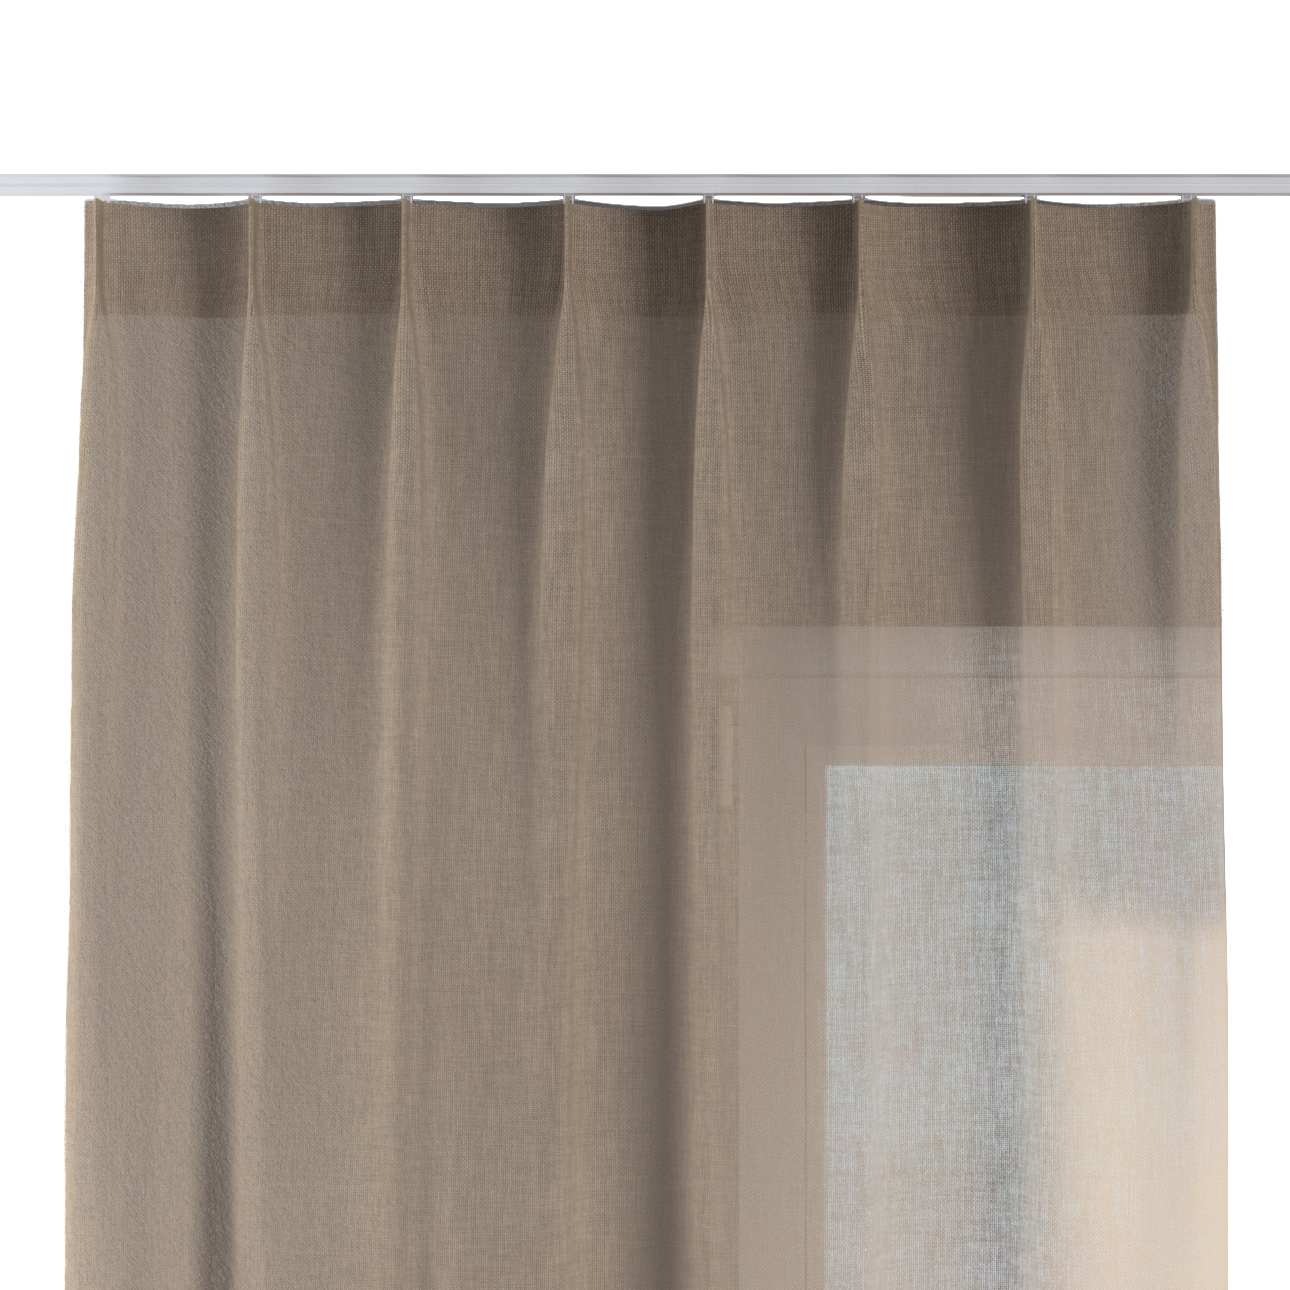 Vorhang mit flämischen 1-er Falten, beige, Sensual Premium (144-40) günstig online kaufen